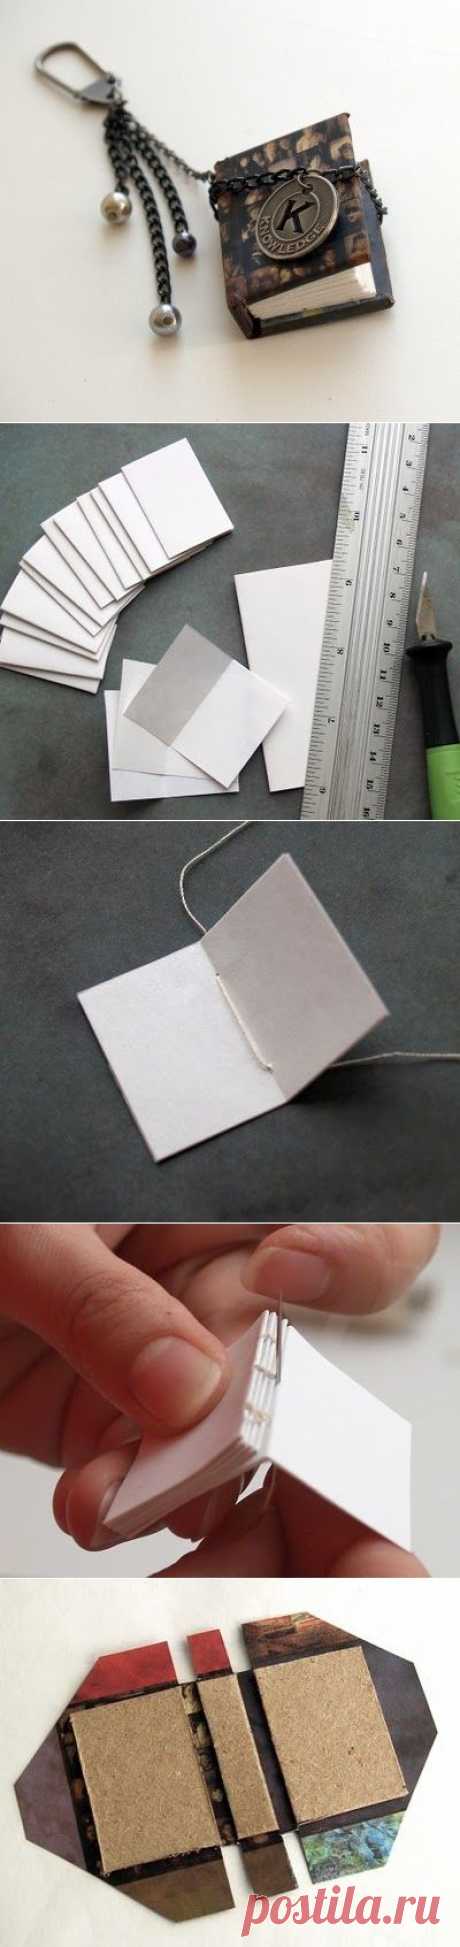 Мастер класс по изготовлению миниатюрной книжечки / Прочие виды рукоделия / Работа с бумагой